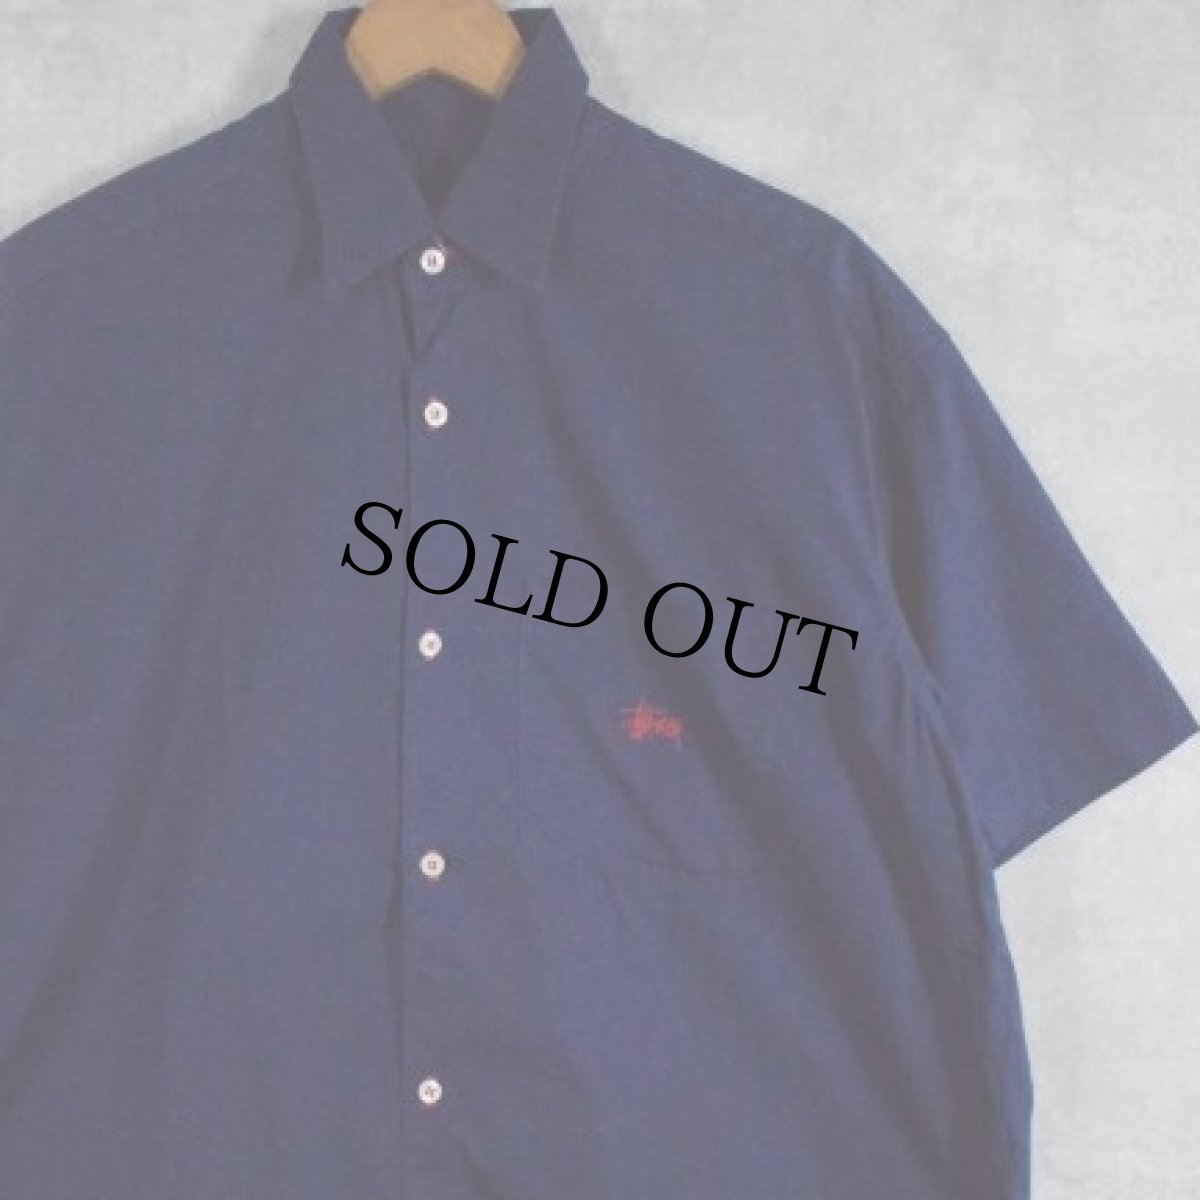 画像1: 90's STUSSY USA製 ロゴ刺繍 コットンシャツ M (1)